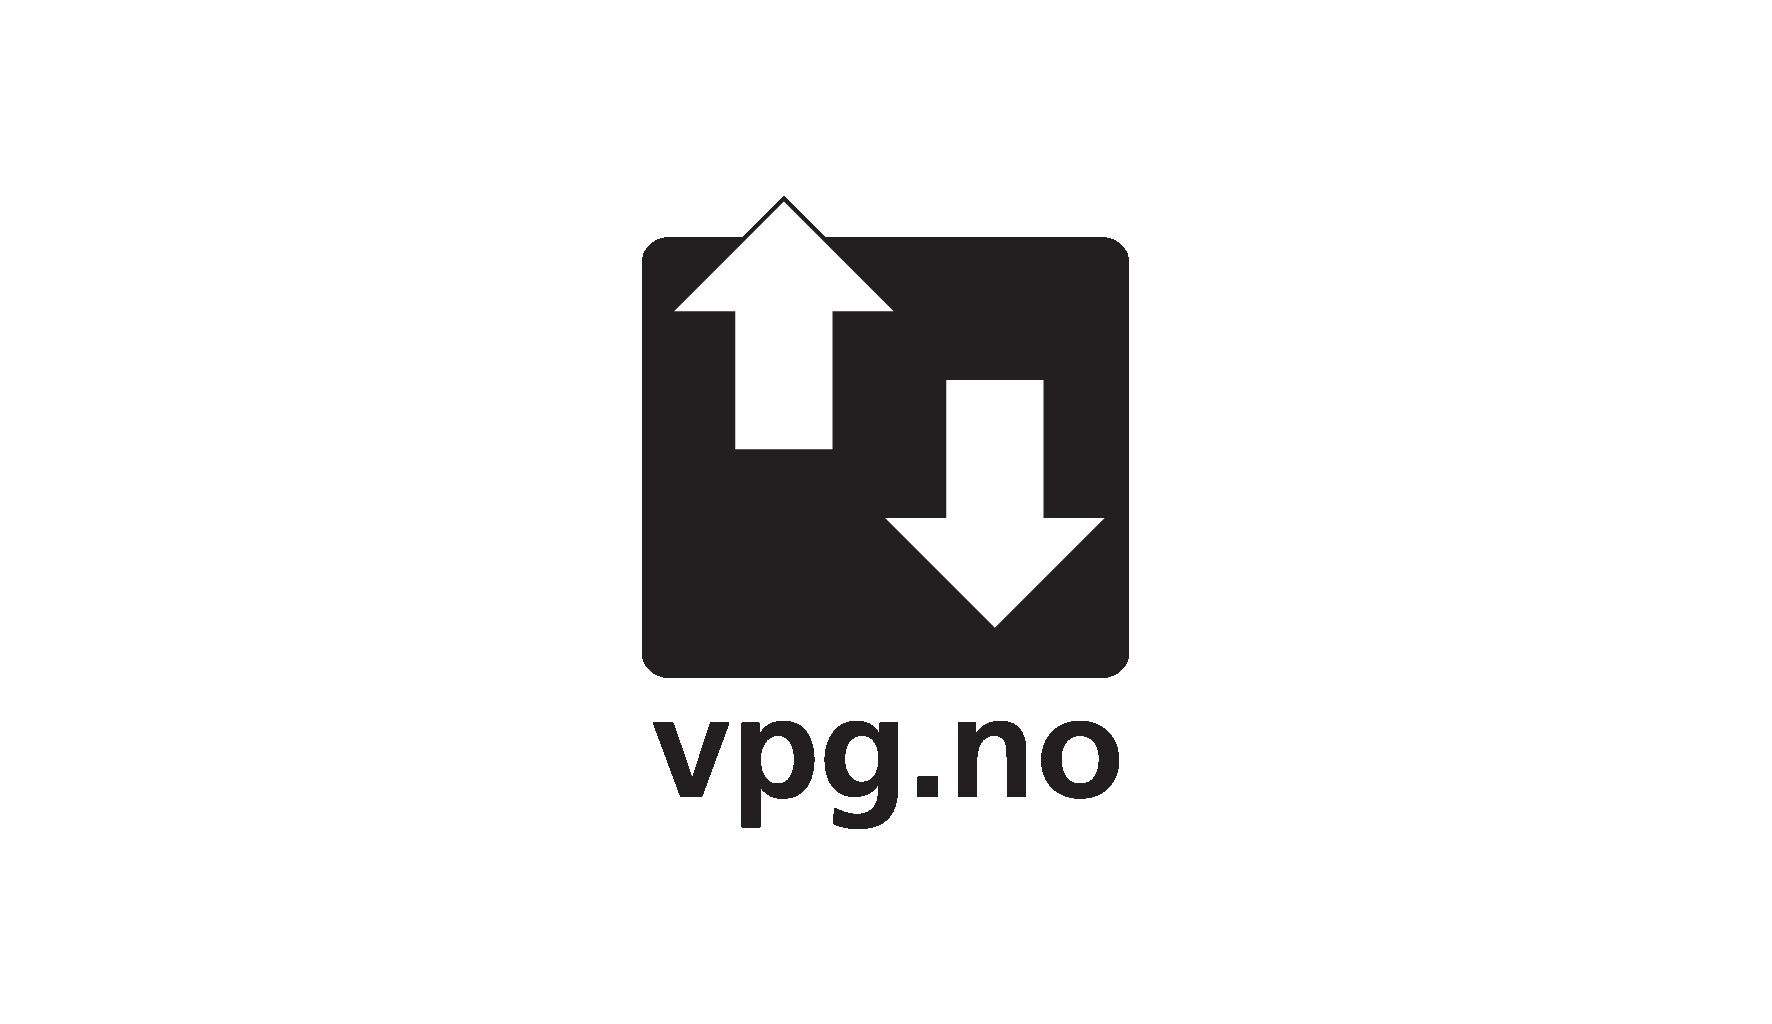 VPG Logo - Ice Bears and Islands Vertical Play Ground (VPG) Norway Confirmed